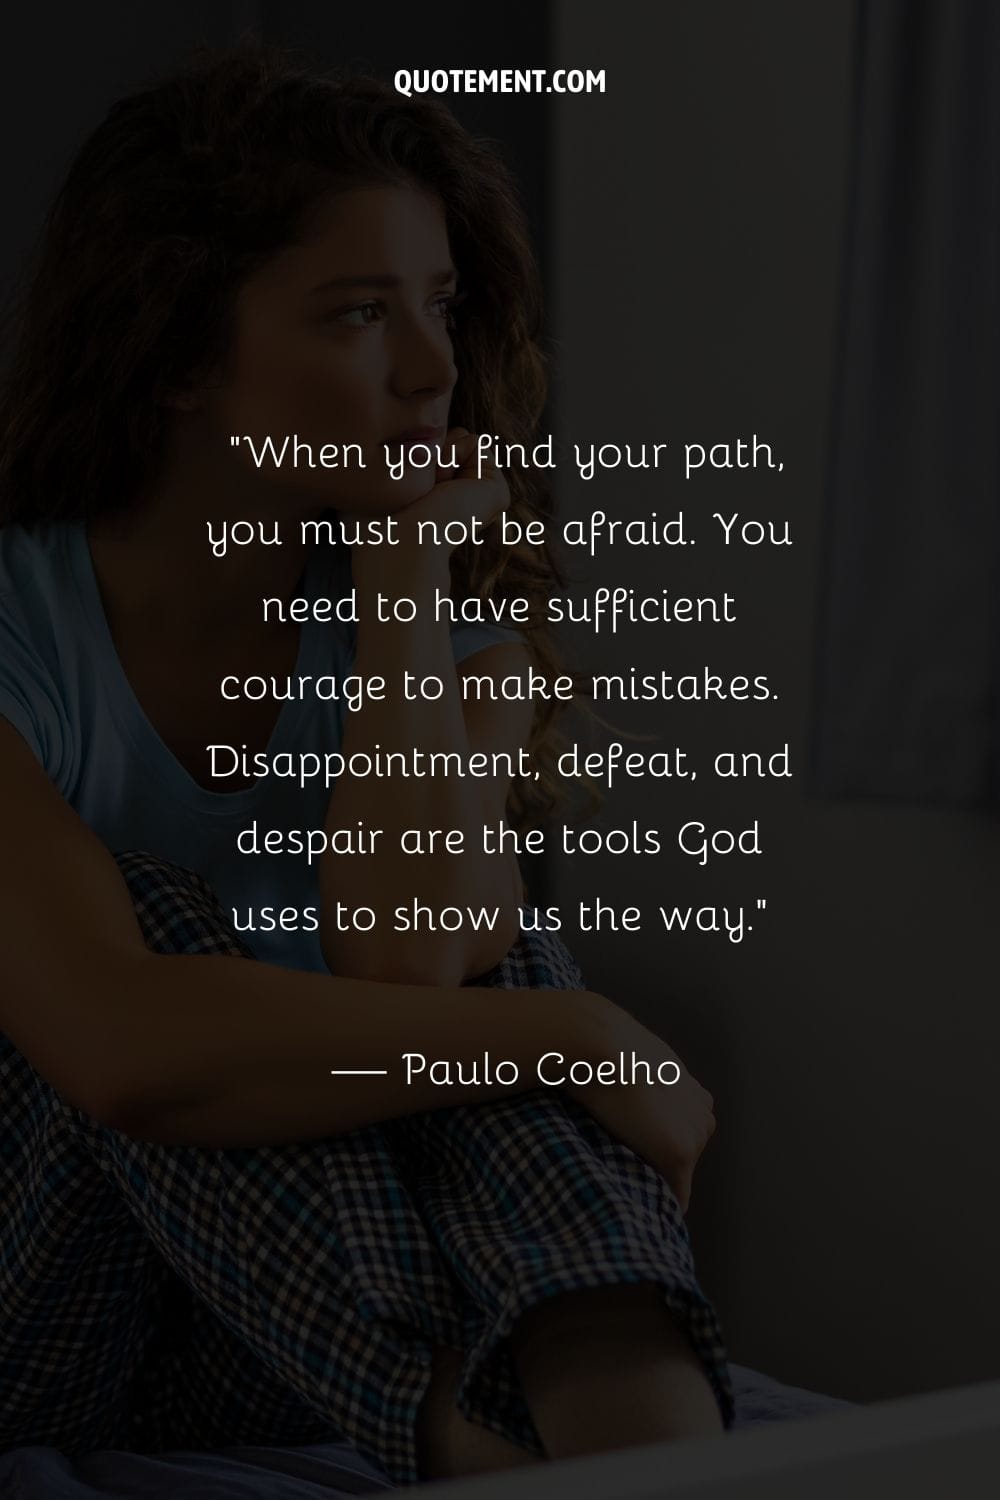 La decepción, la derrota y la desesperación son las herramientas que Dios utiliza para mostrarnos el camino